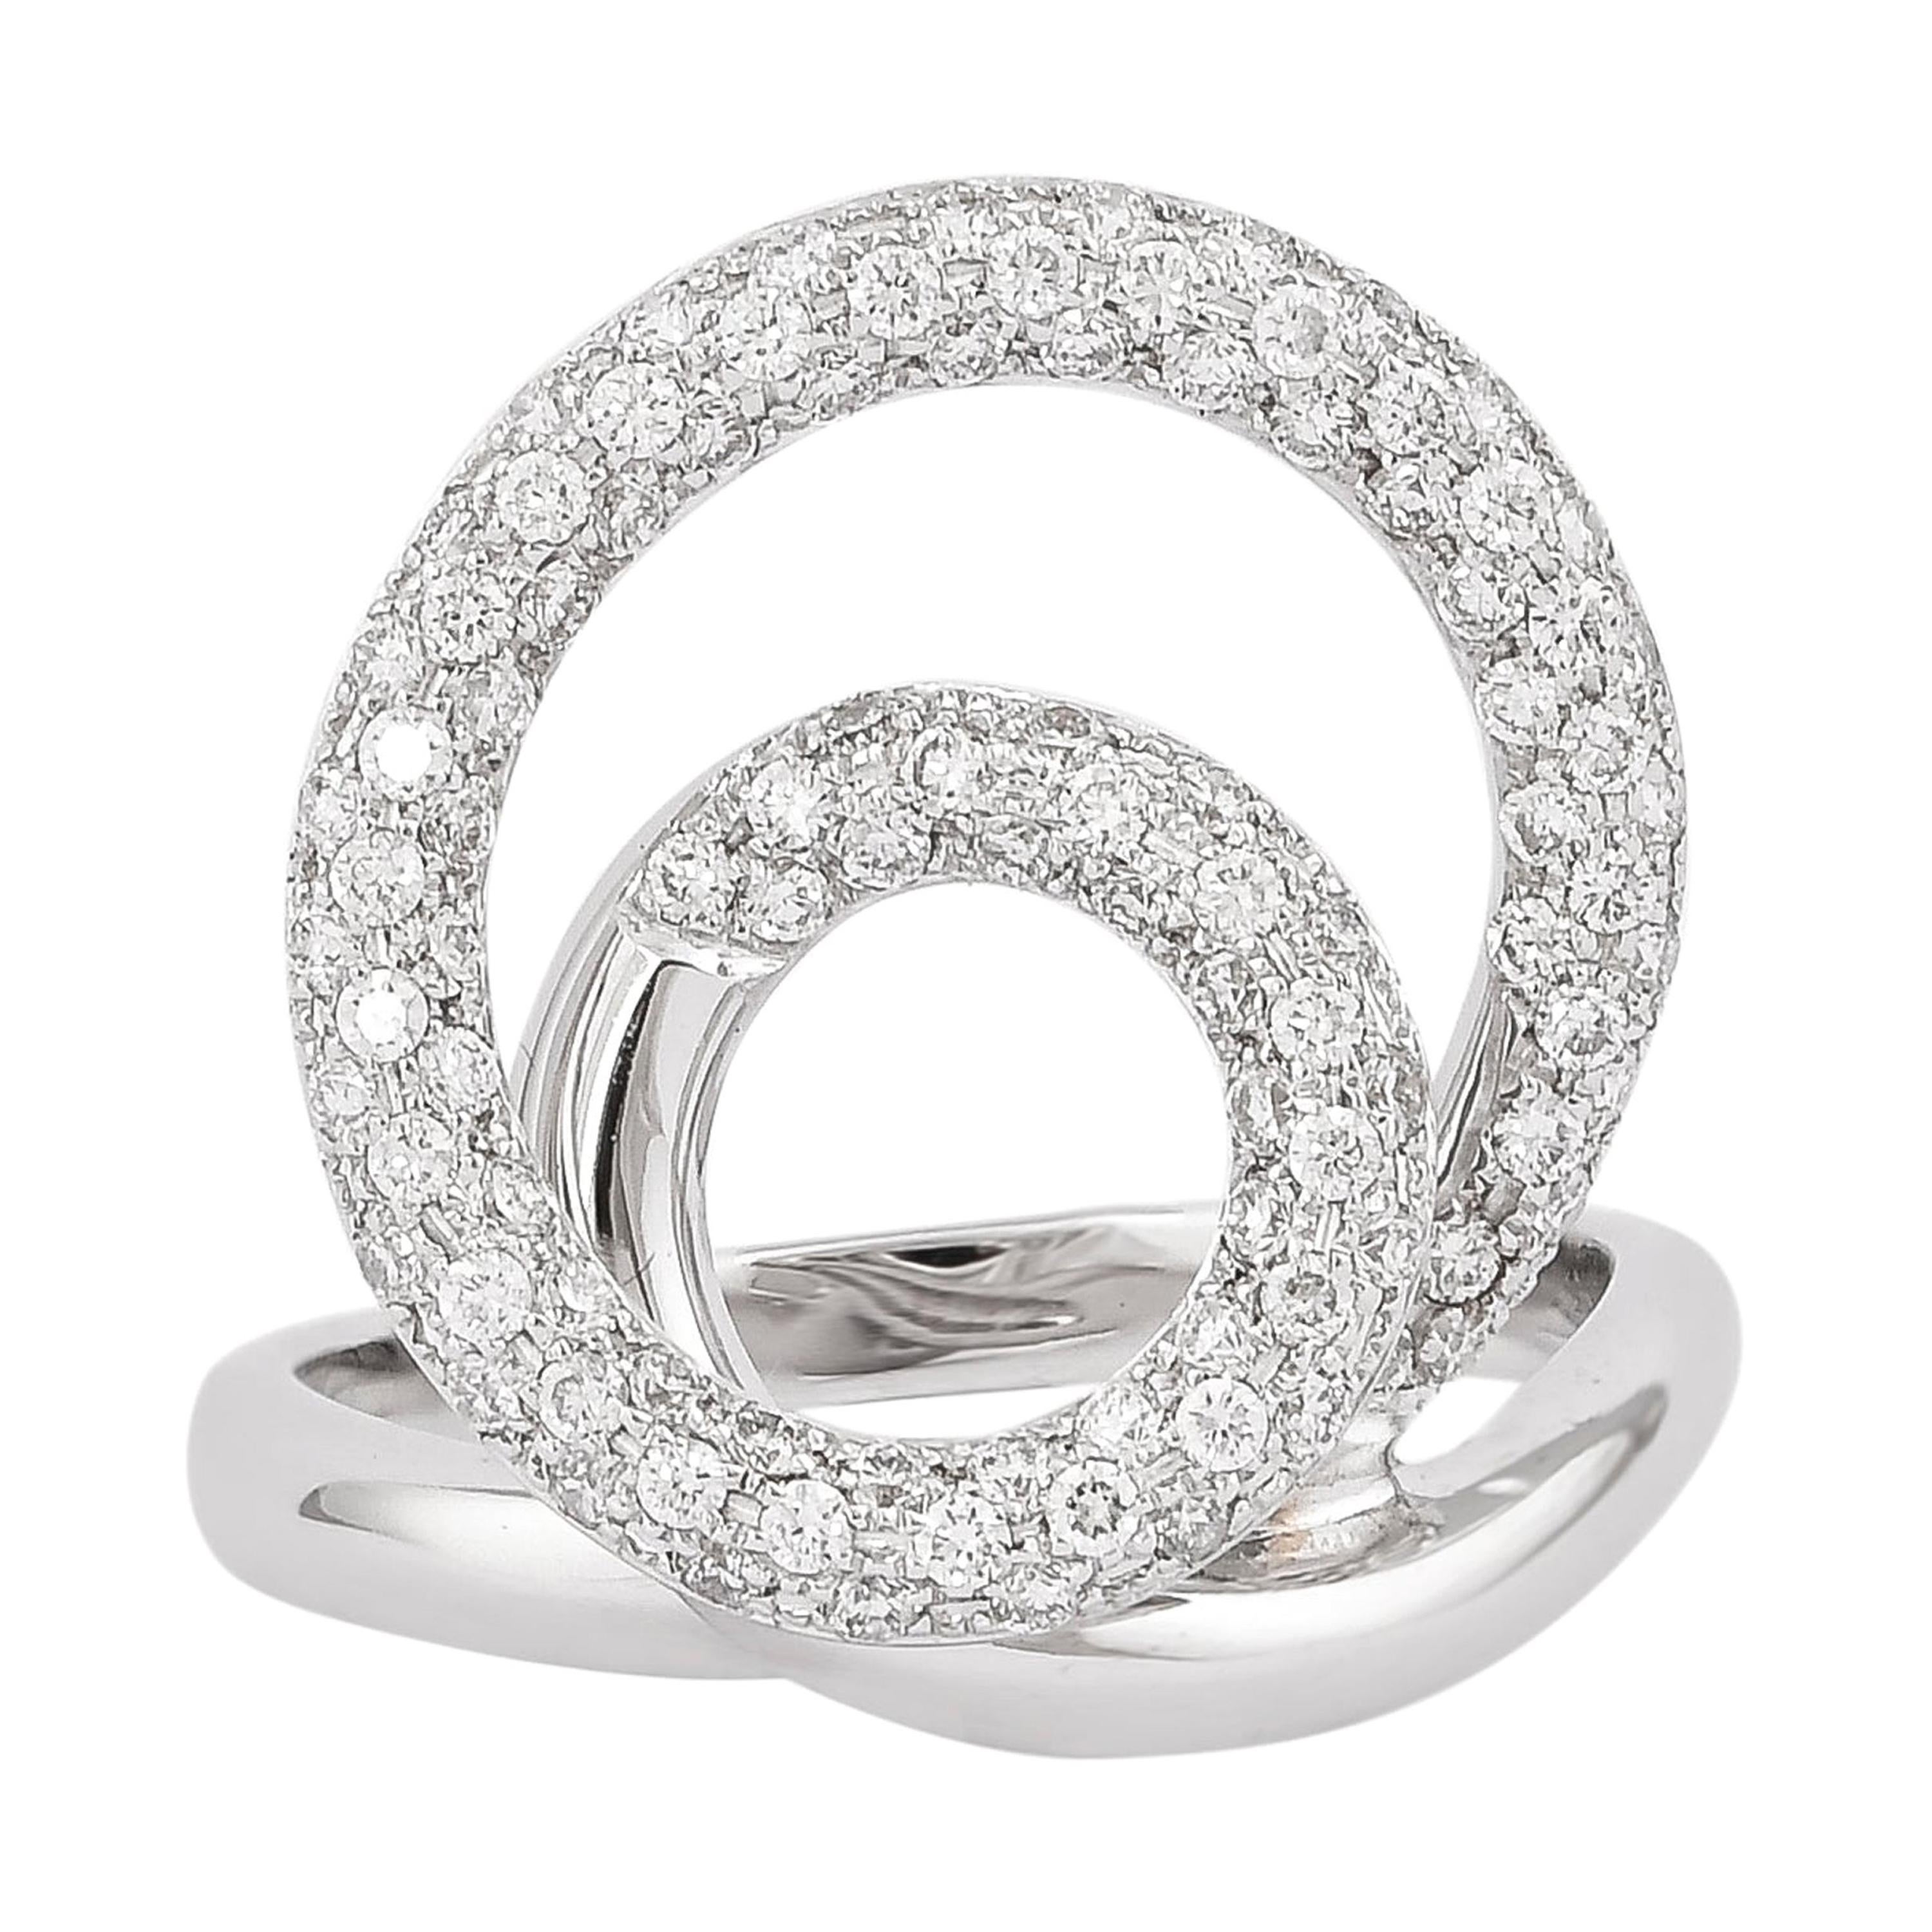 0.82 Carat Diamond Ring in 18 Karat White Gold